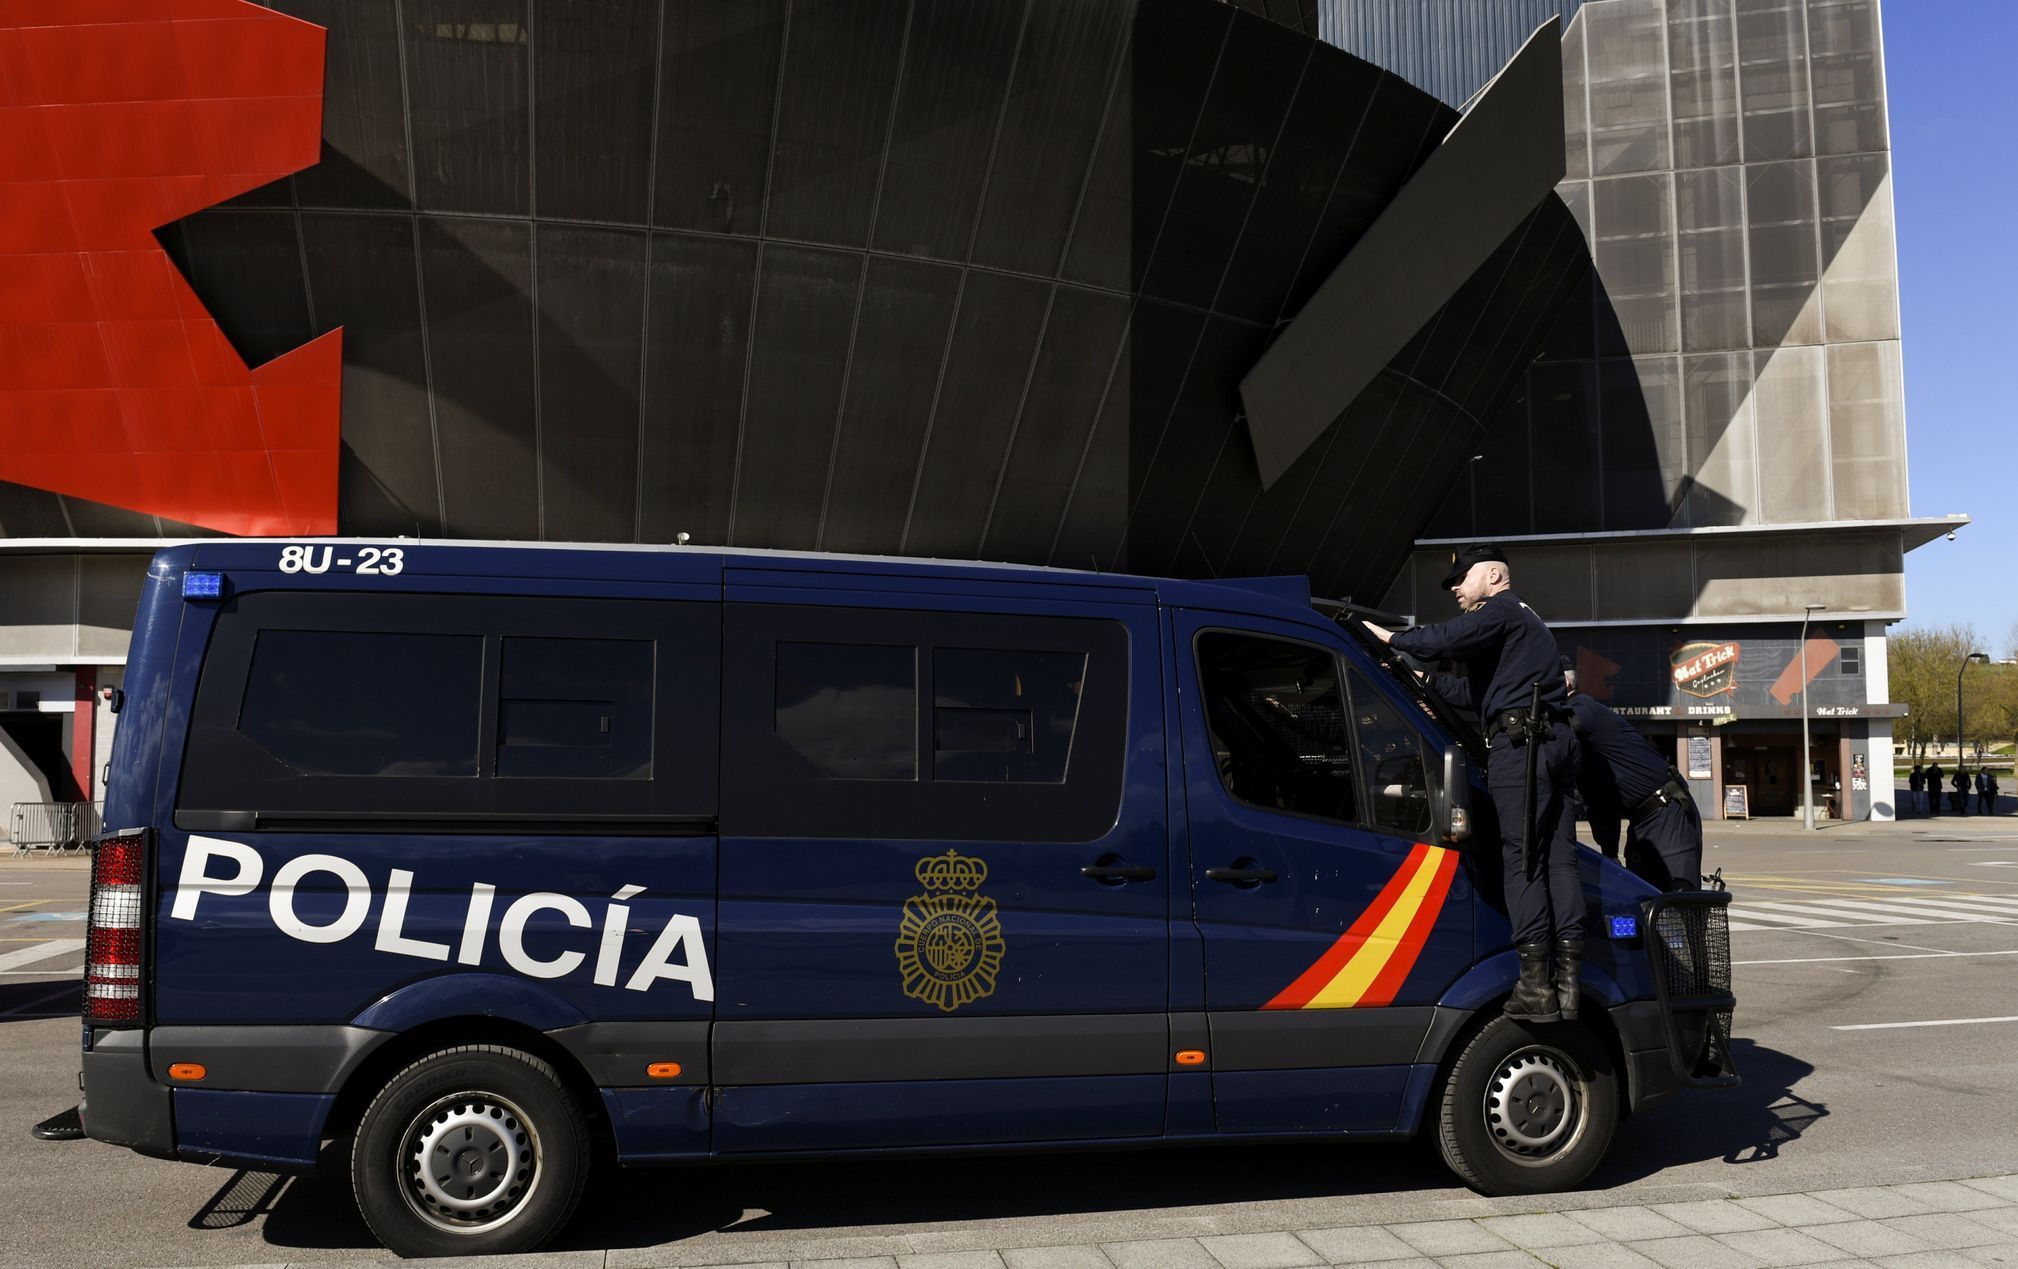 Španělská policie před stadionem El Molinon.